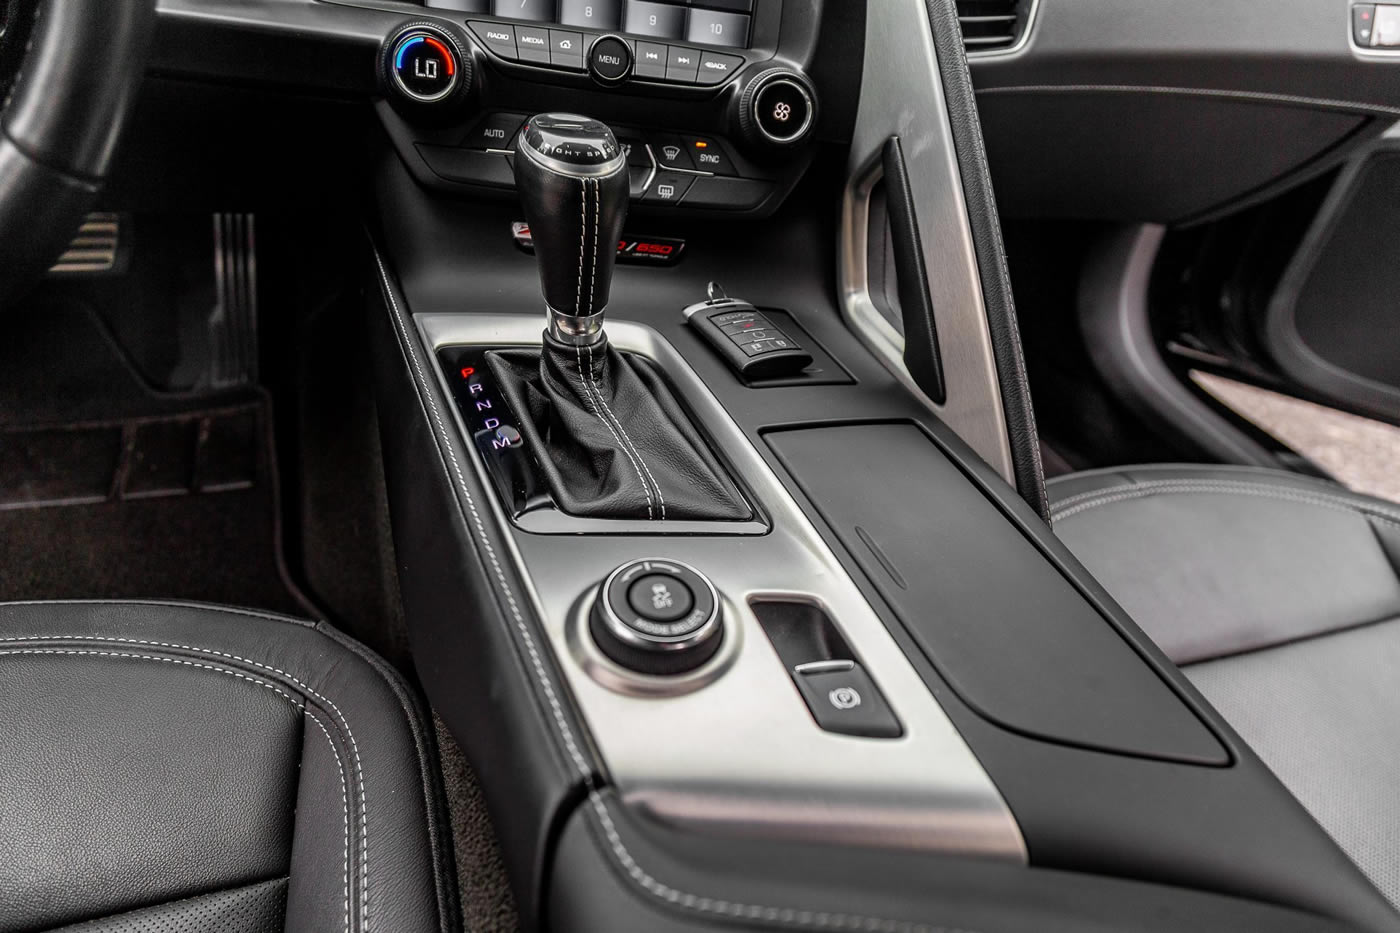 2017 Corvette Z06 Coupe in Black